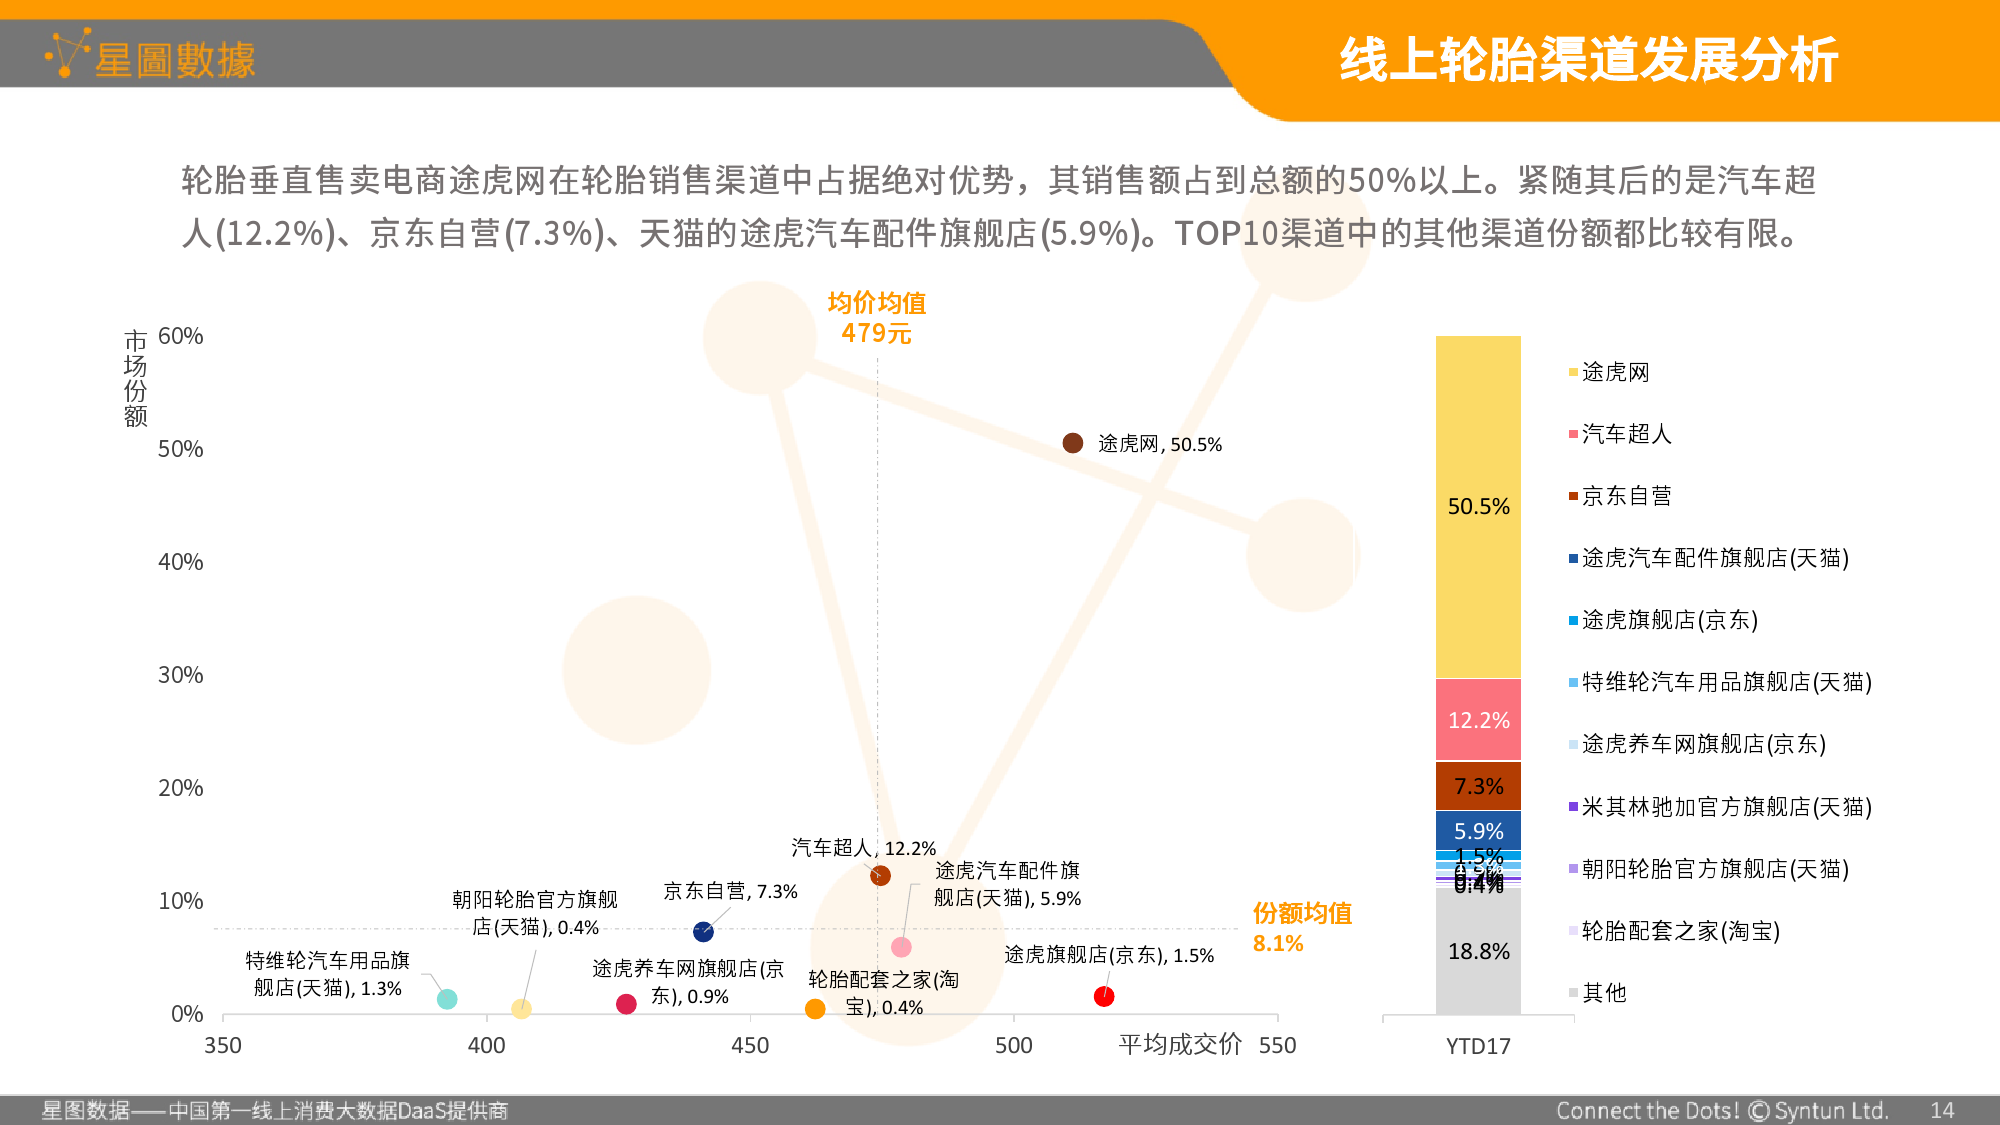 2017年中国轮胎电商消费大数据分析报告(全文